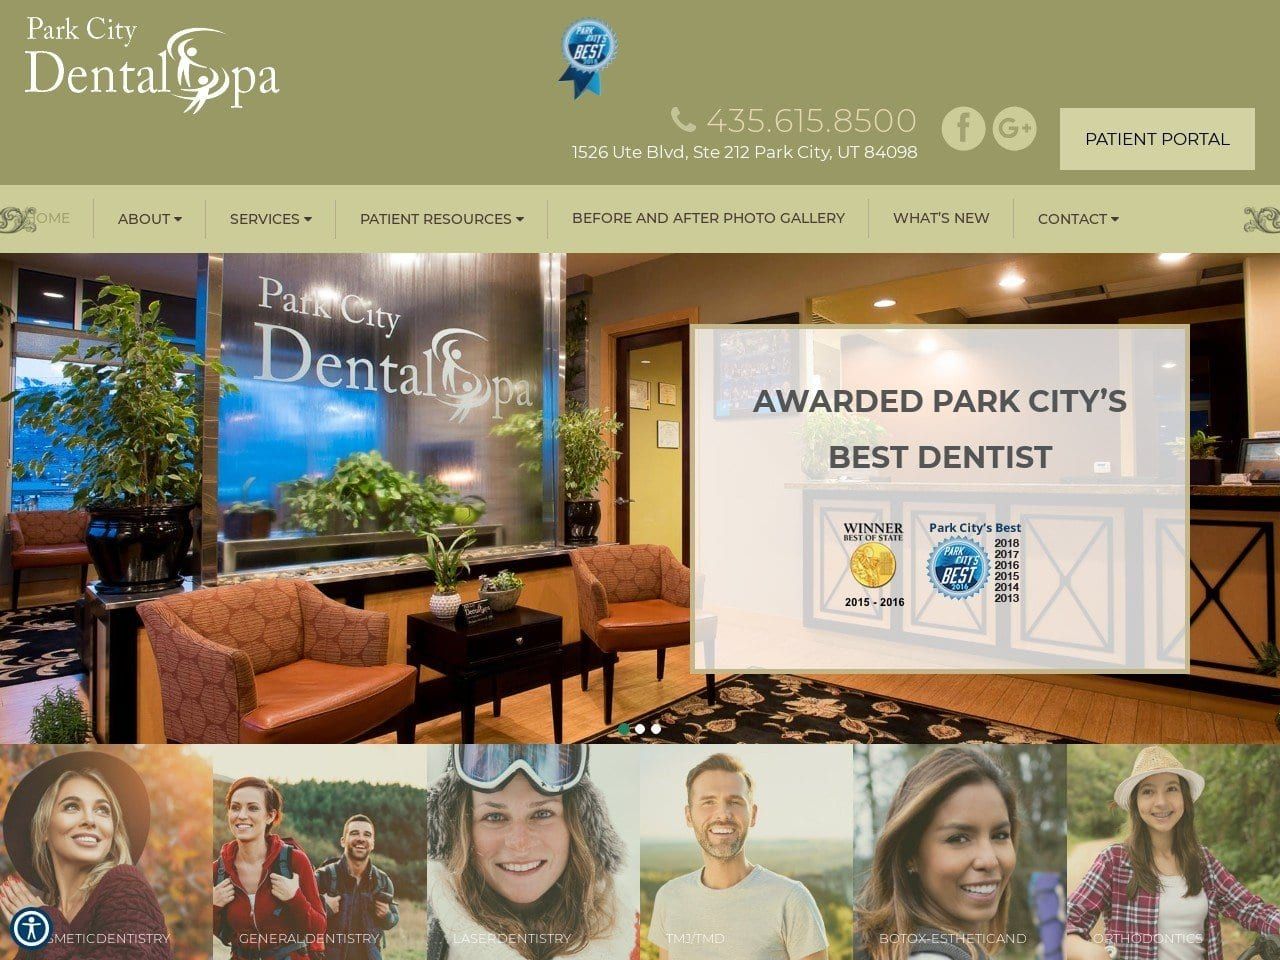 Park City Dental Spa Website Screenshot from parkcitydentalspa.com